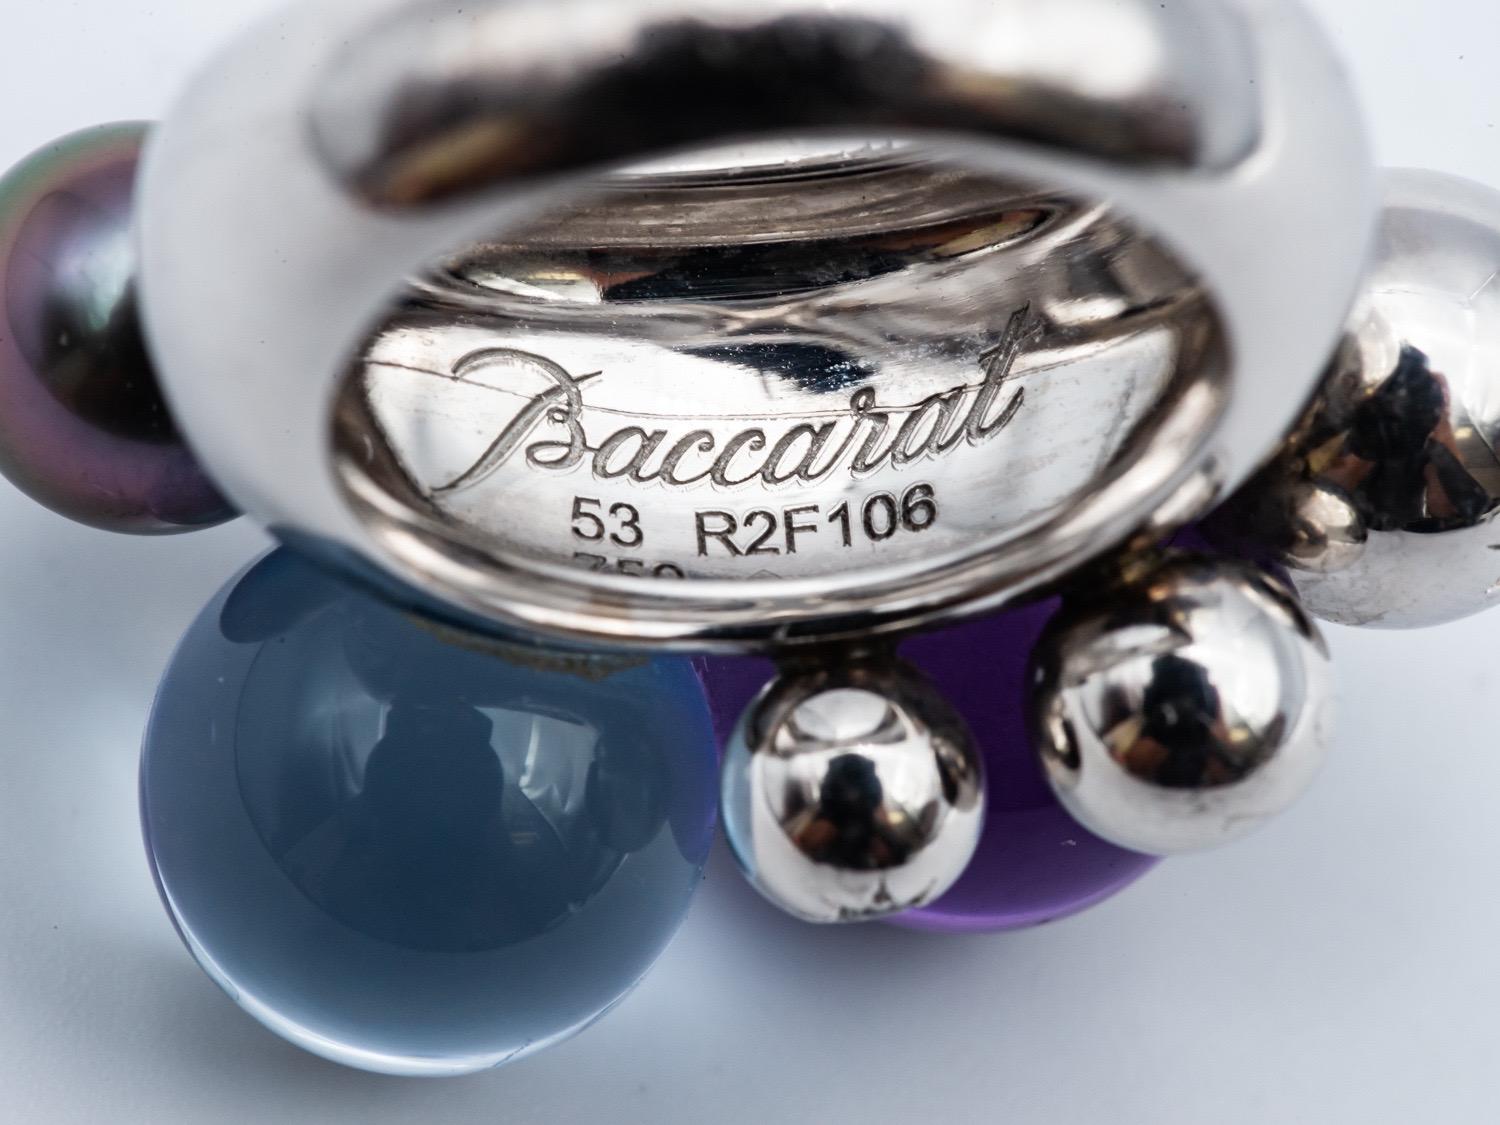 Entdecken Sie die zeitlose Eleganz der Baccarat-Kollektion von Gold-, Perlen-, Kristall- und Diamantringen, eine exquisite Verbindung von edlen Materialien und raffiniertem Design.

Dieser bemerkenswerte Ring aus dem prestigeträchtigen Baccarat-Haus